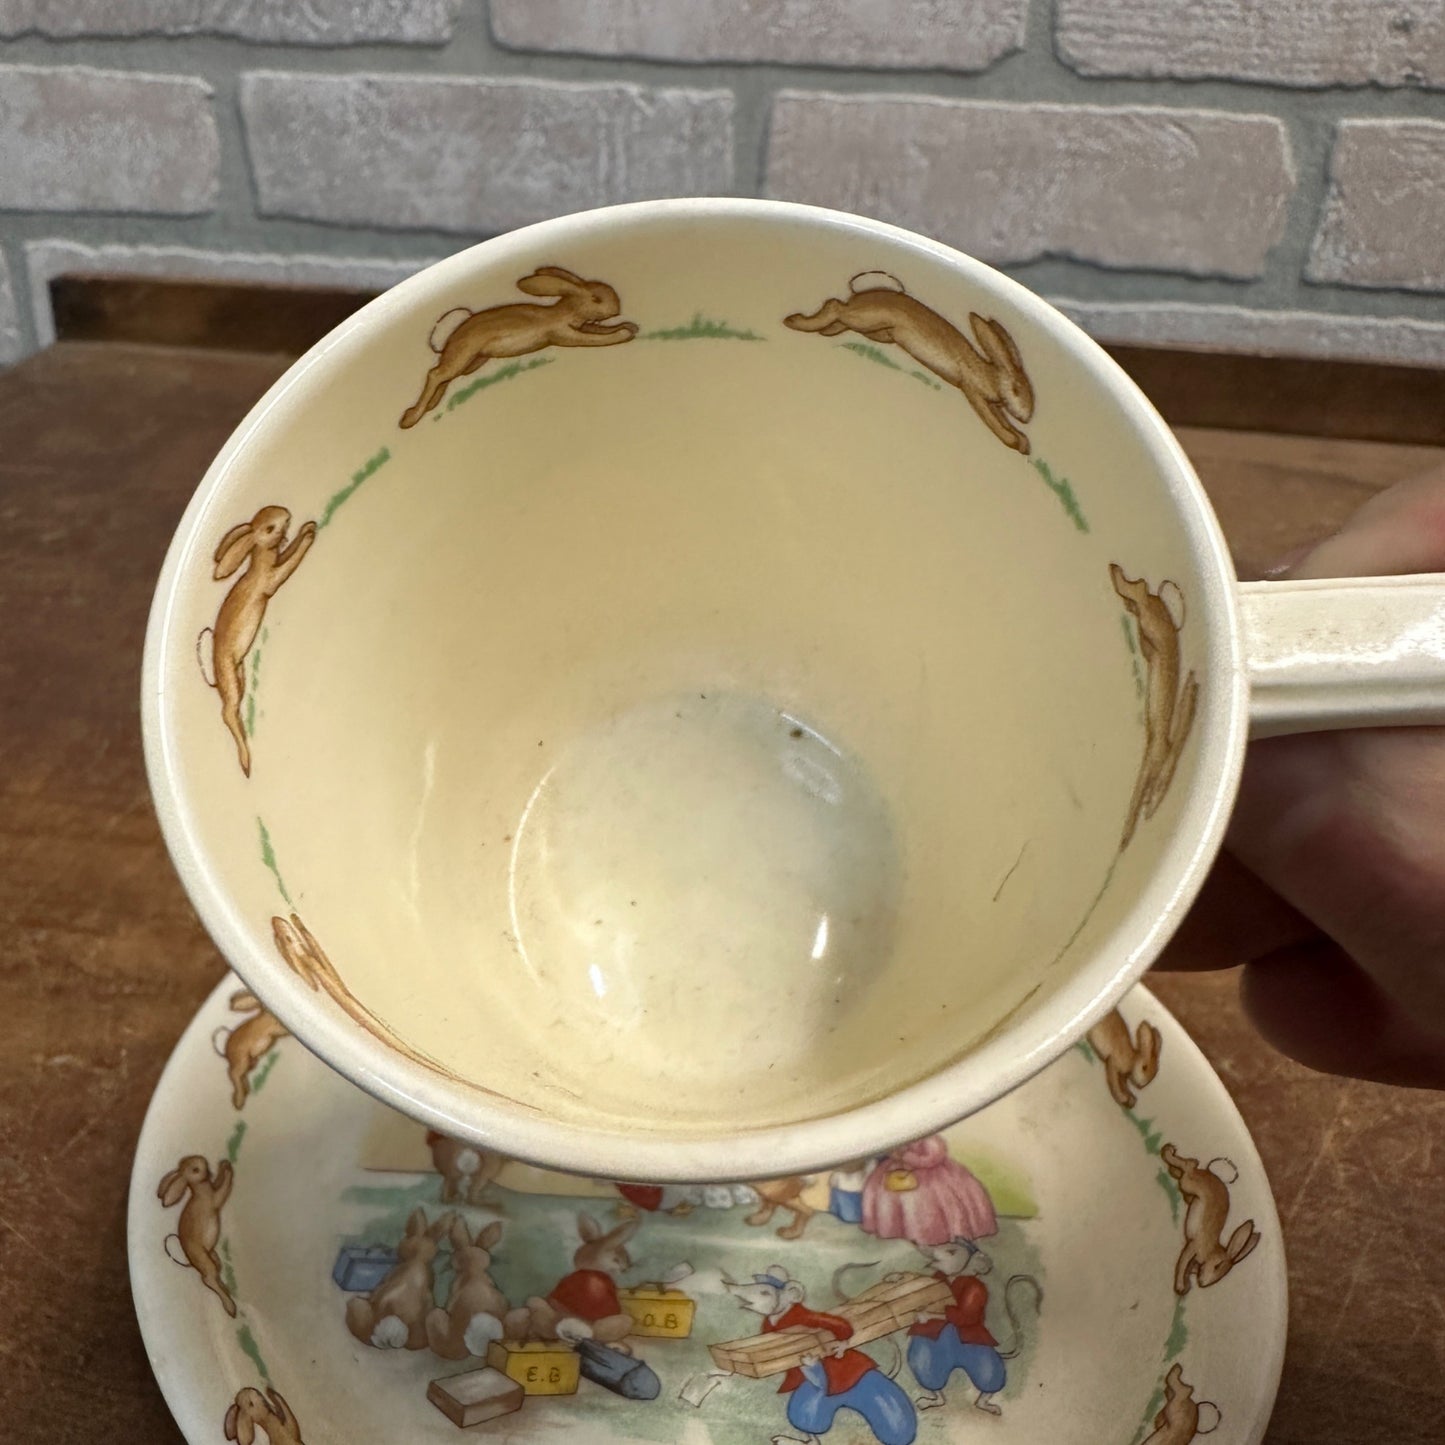 Royal Doulton Bunnykins Rabbit Tea Cup & Saucer